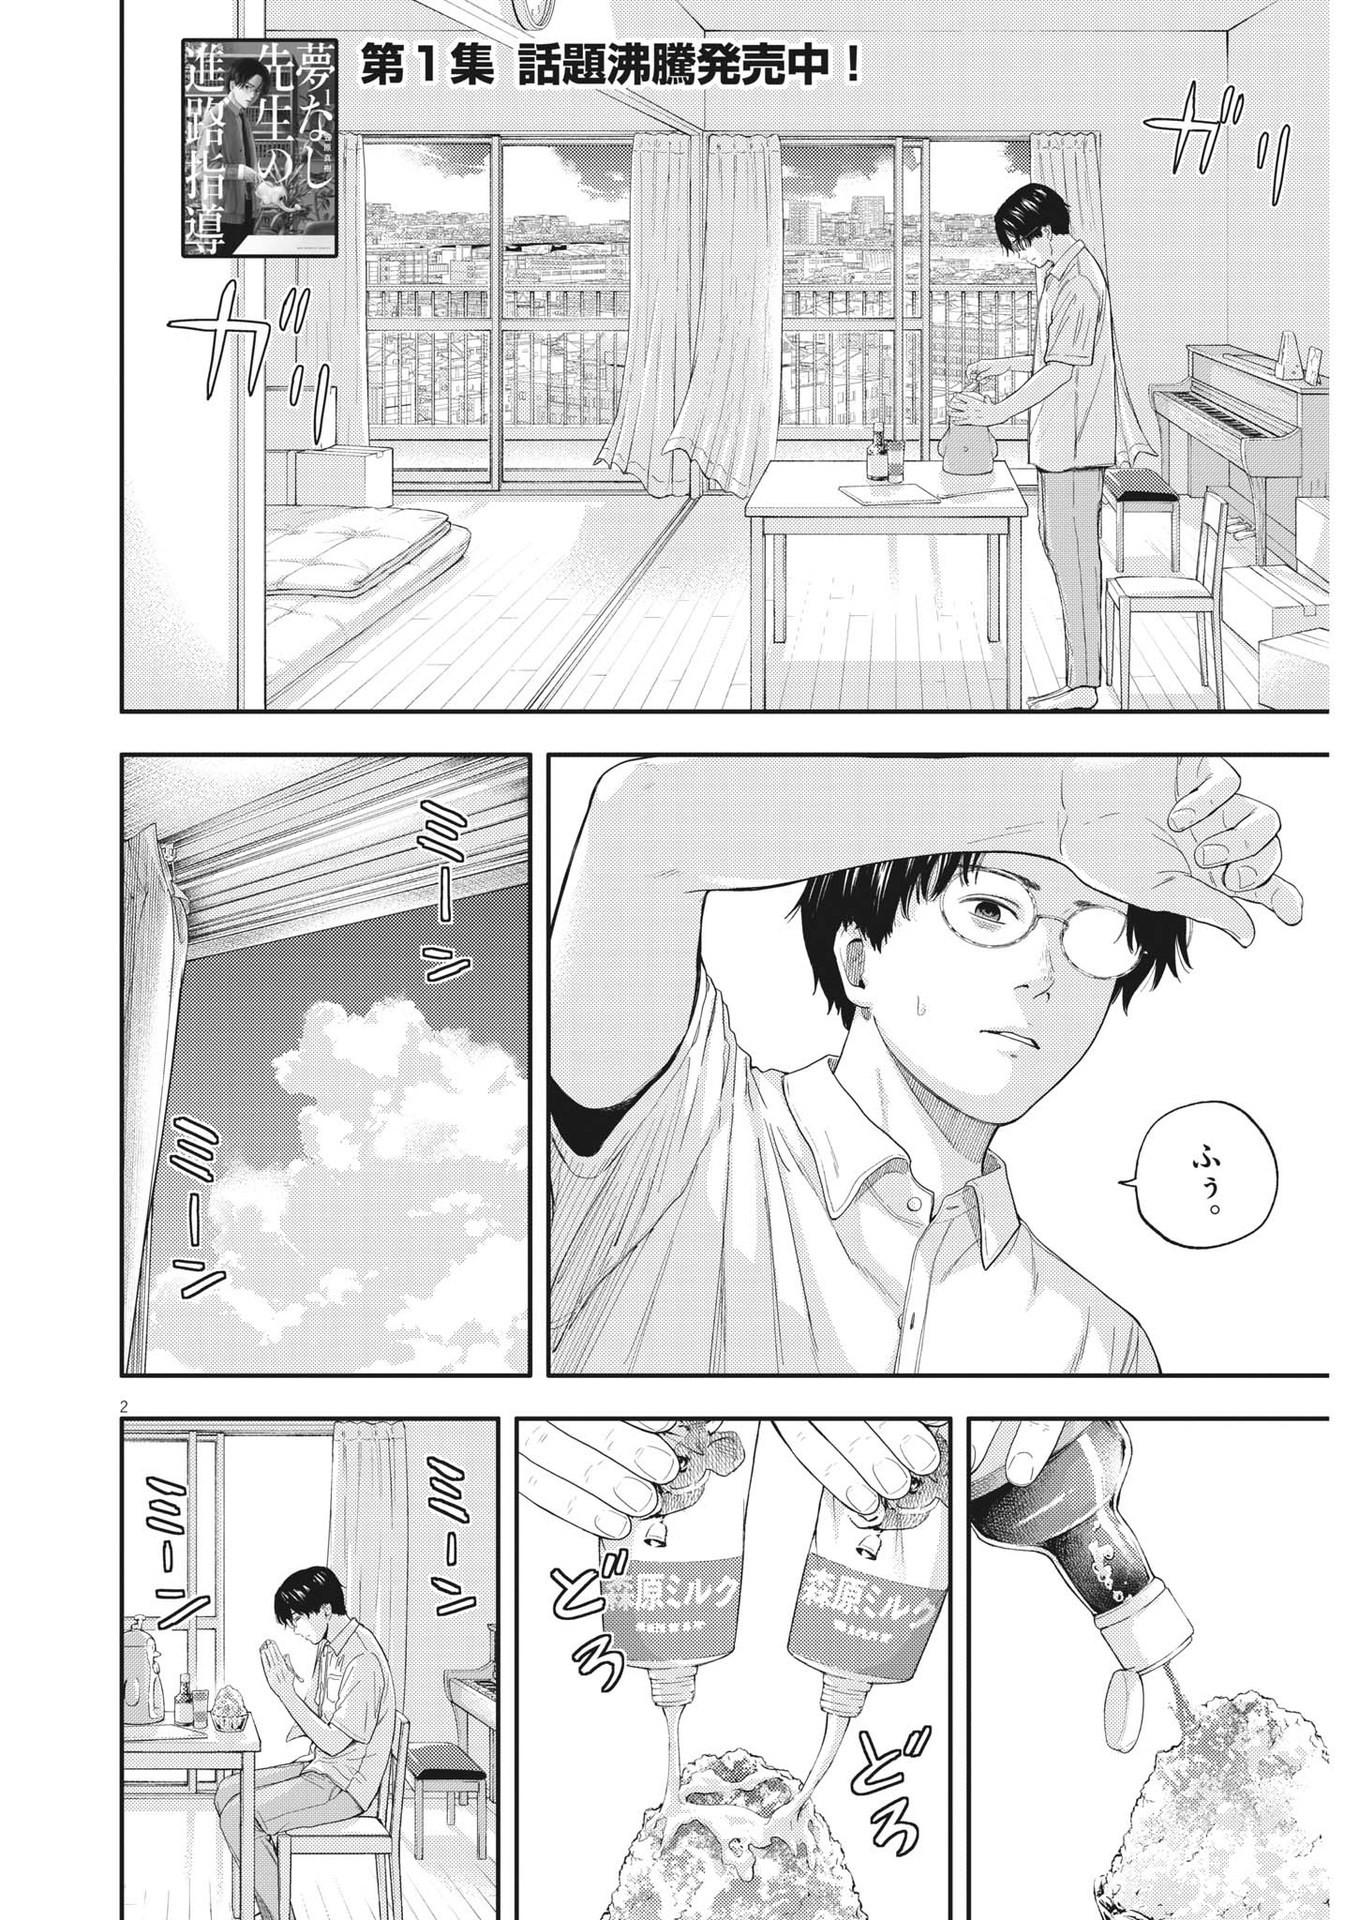 Yumenashi-sensei no Shinroshidou - Chapter 13 - Page 2